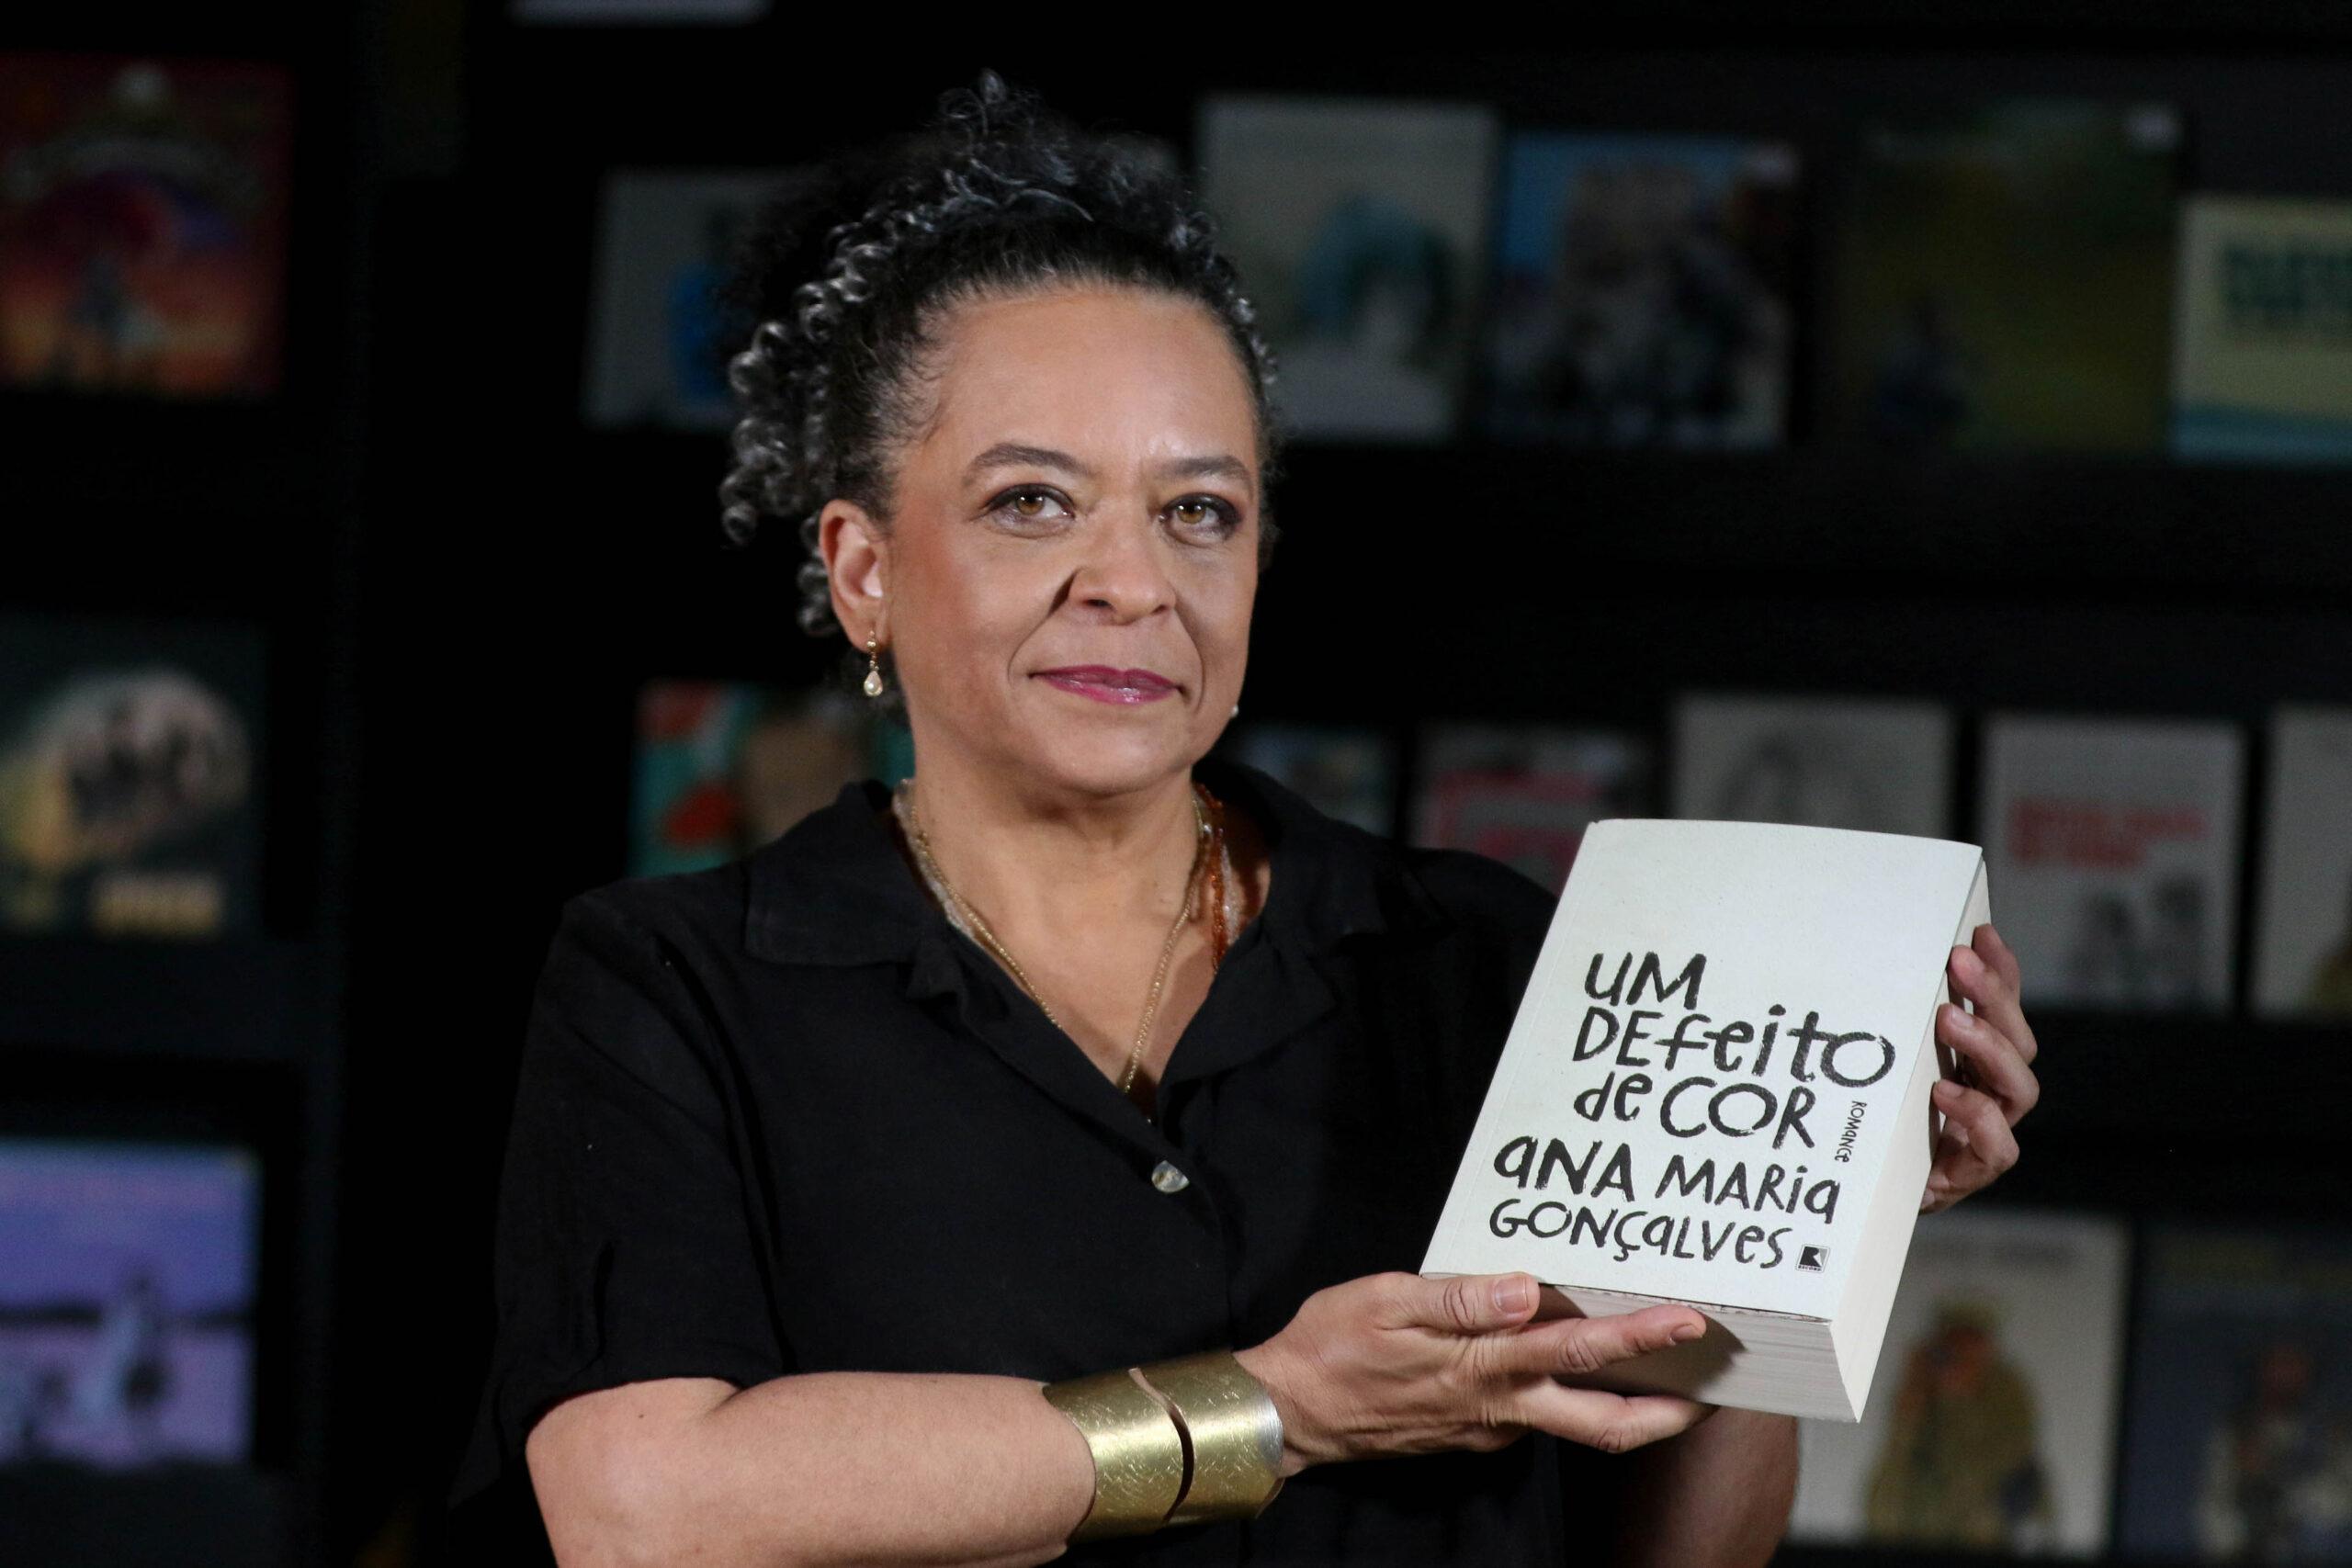 Clássico da literatura brasileira, “Um Defeito de Cor” ganha destaque na TV Brasil